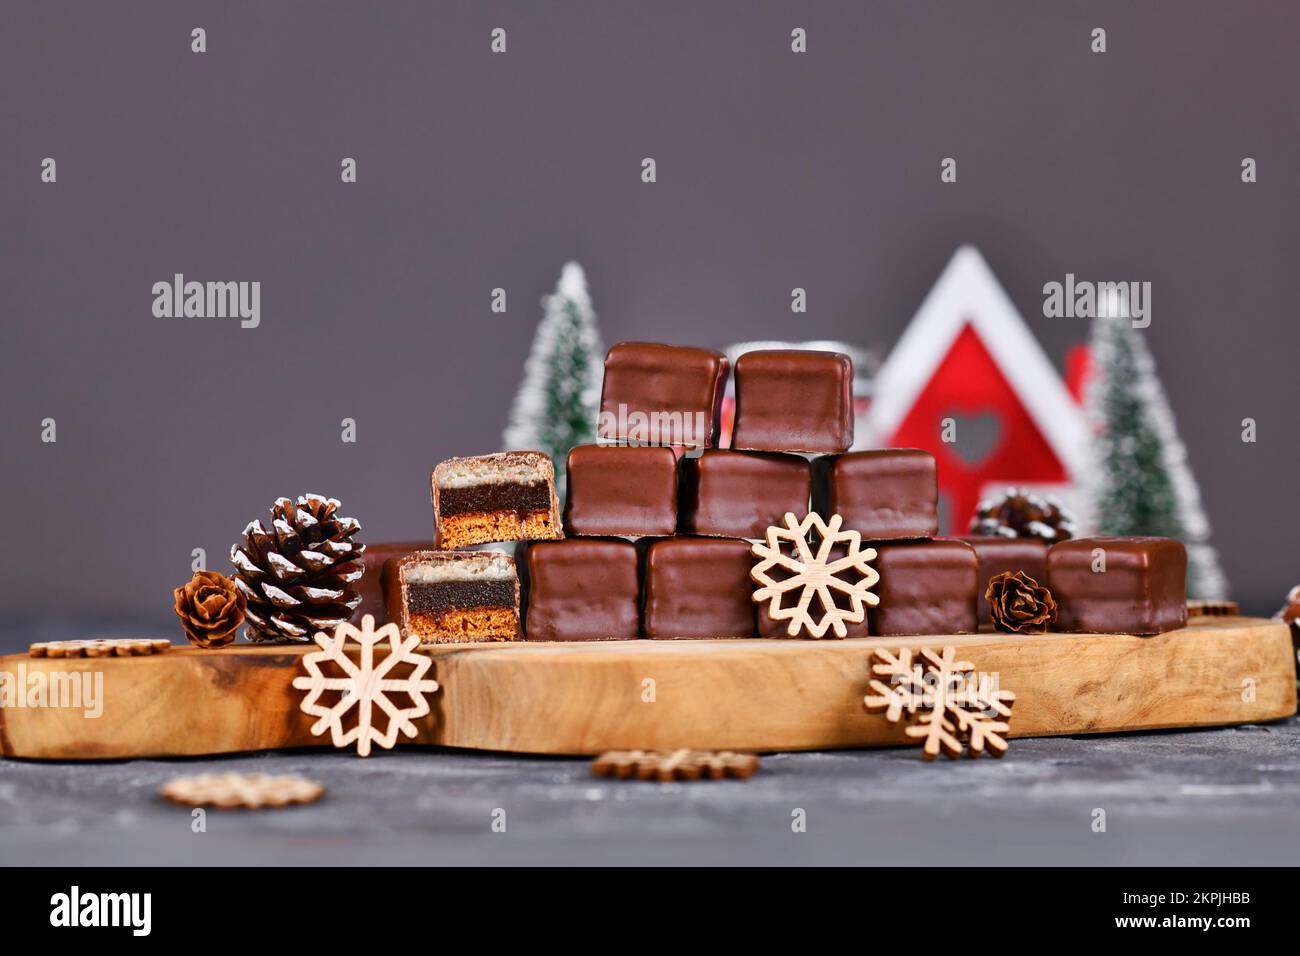 Bonbons traditionnels allemands appelés « Dominosine ».Bonbons de Noël composés de pain d'épice, de gelée et de couches de massepain recouvertes de glaçage au chocolat Banque D'Images